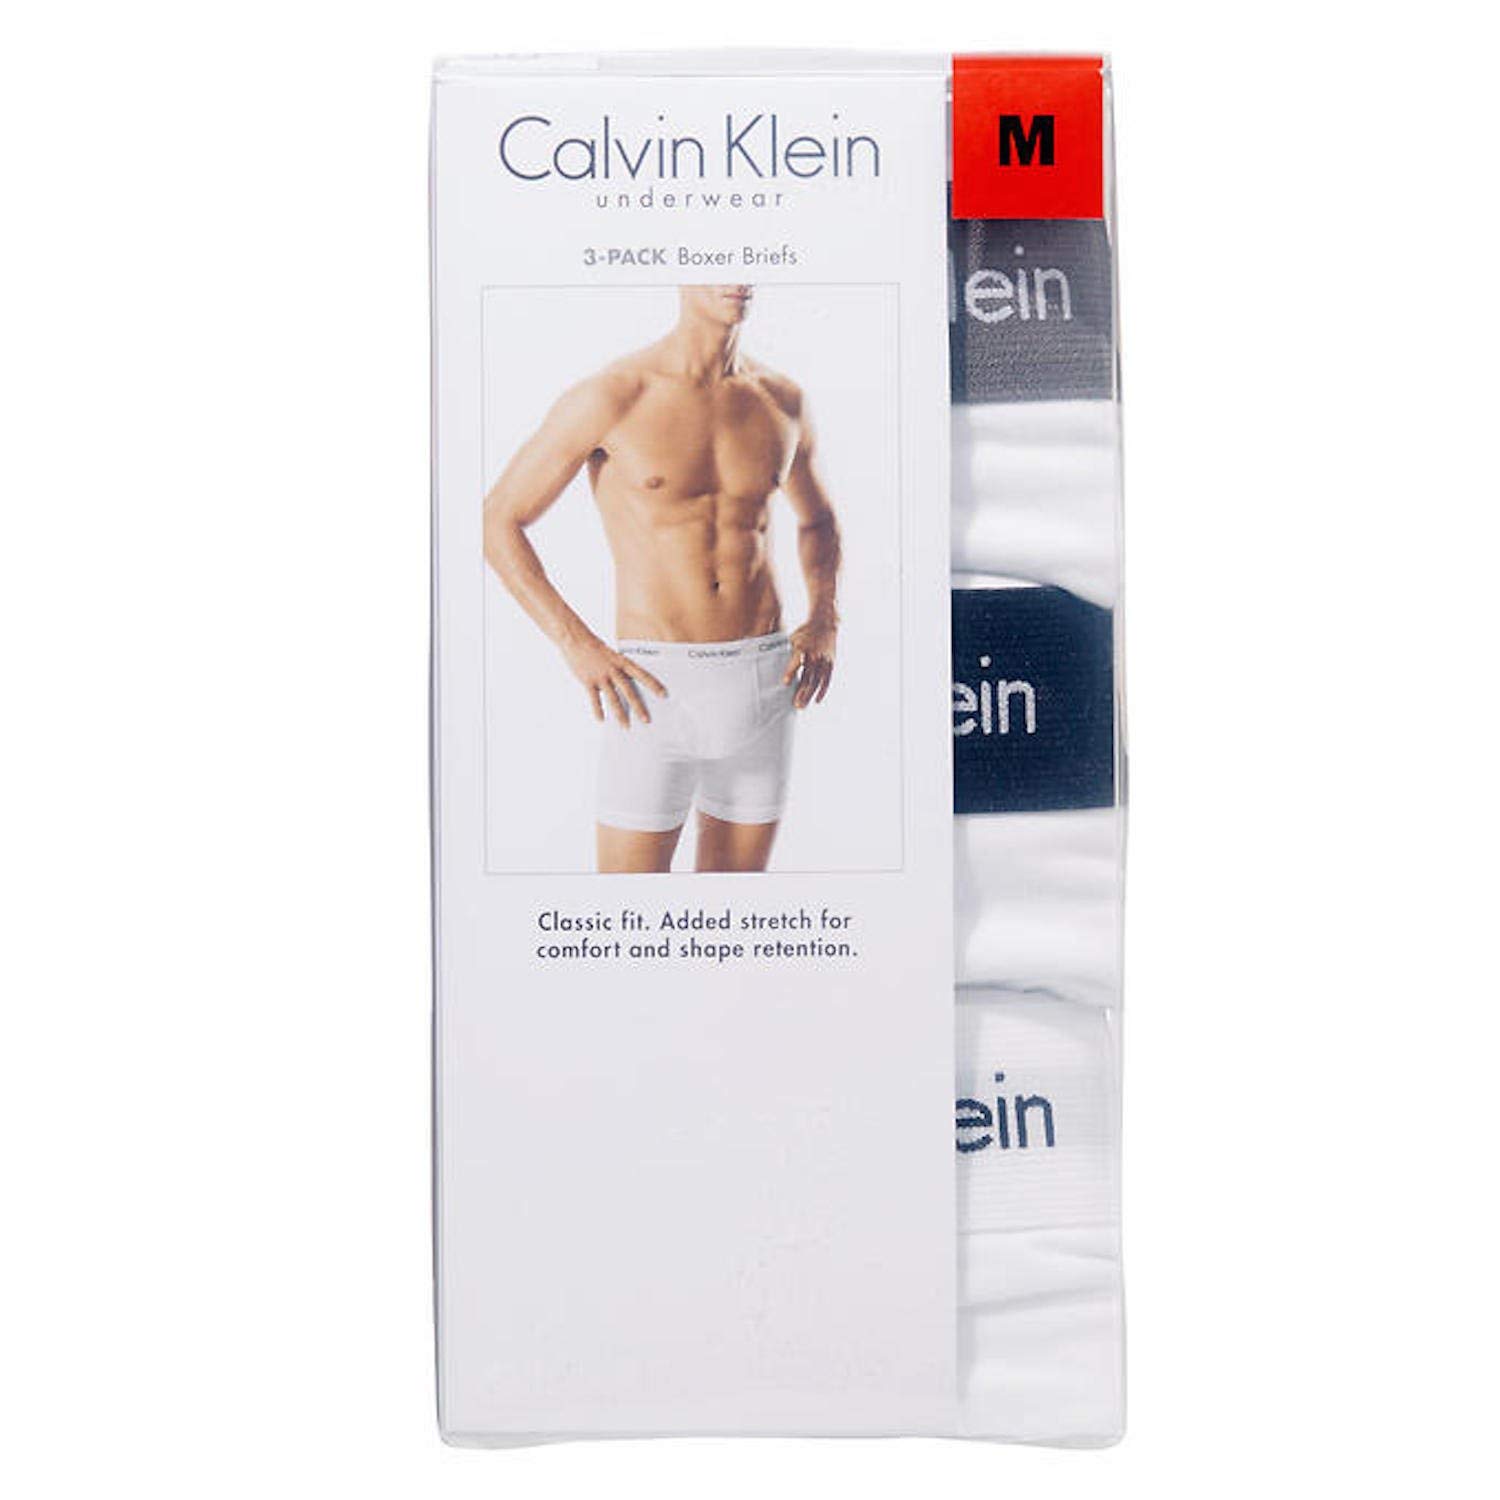 Calvin Klein Men's Underwear Cotton Stretch 3 Pack Boxer Briefs